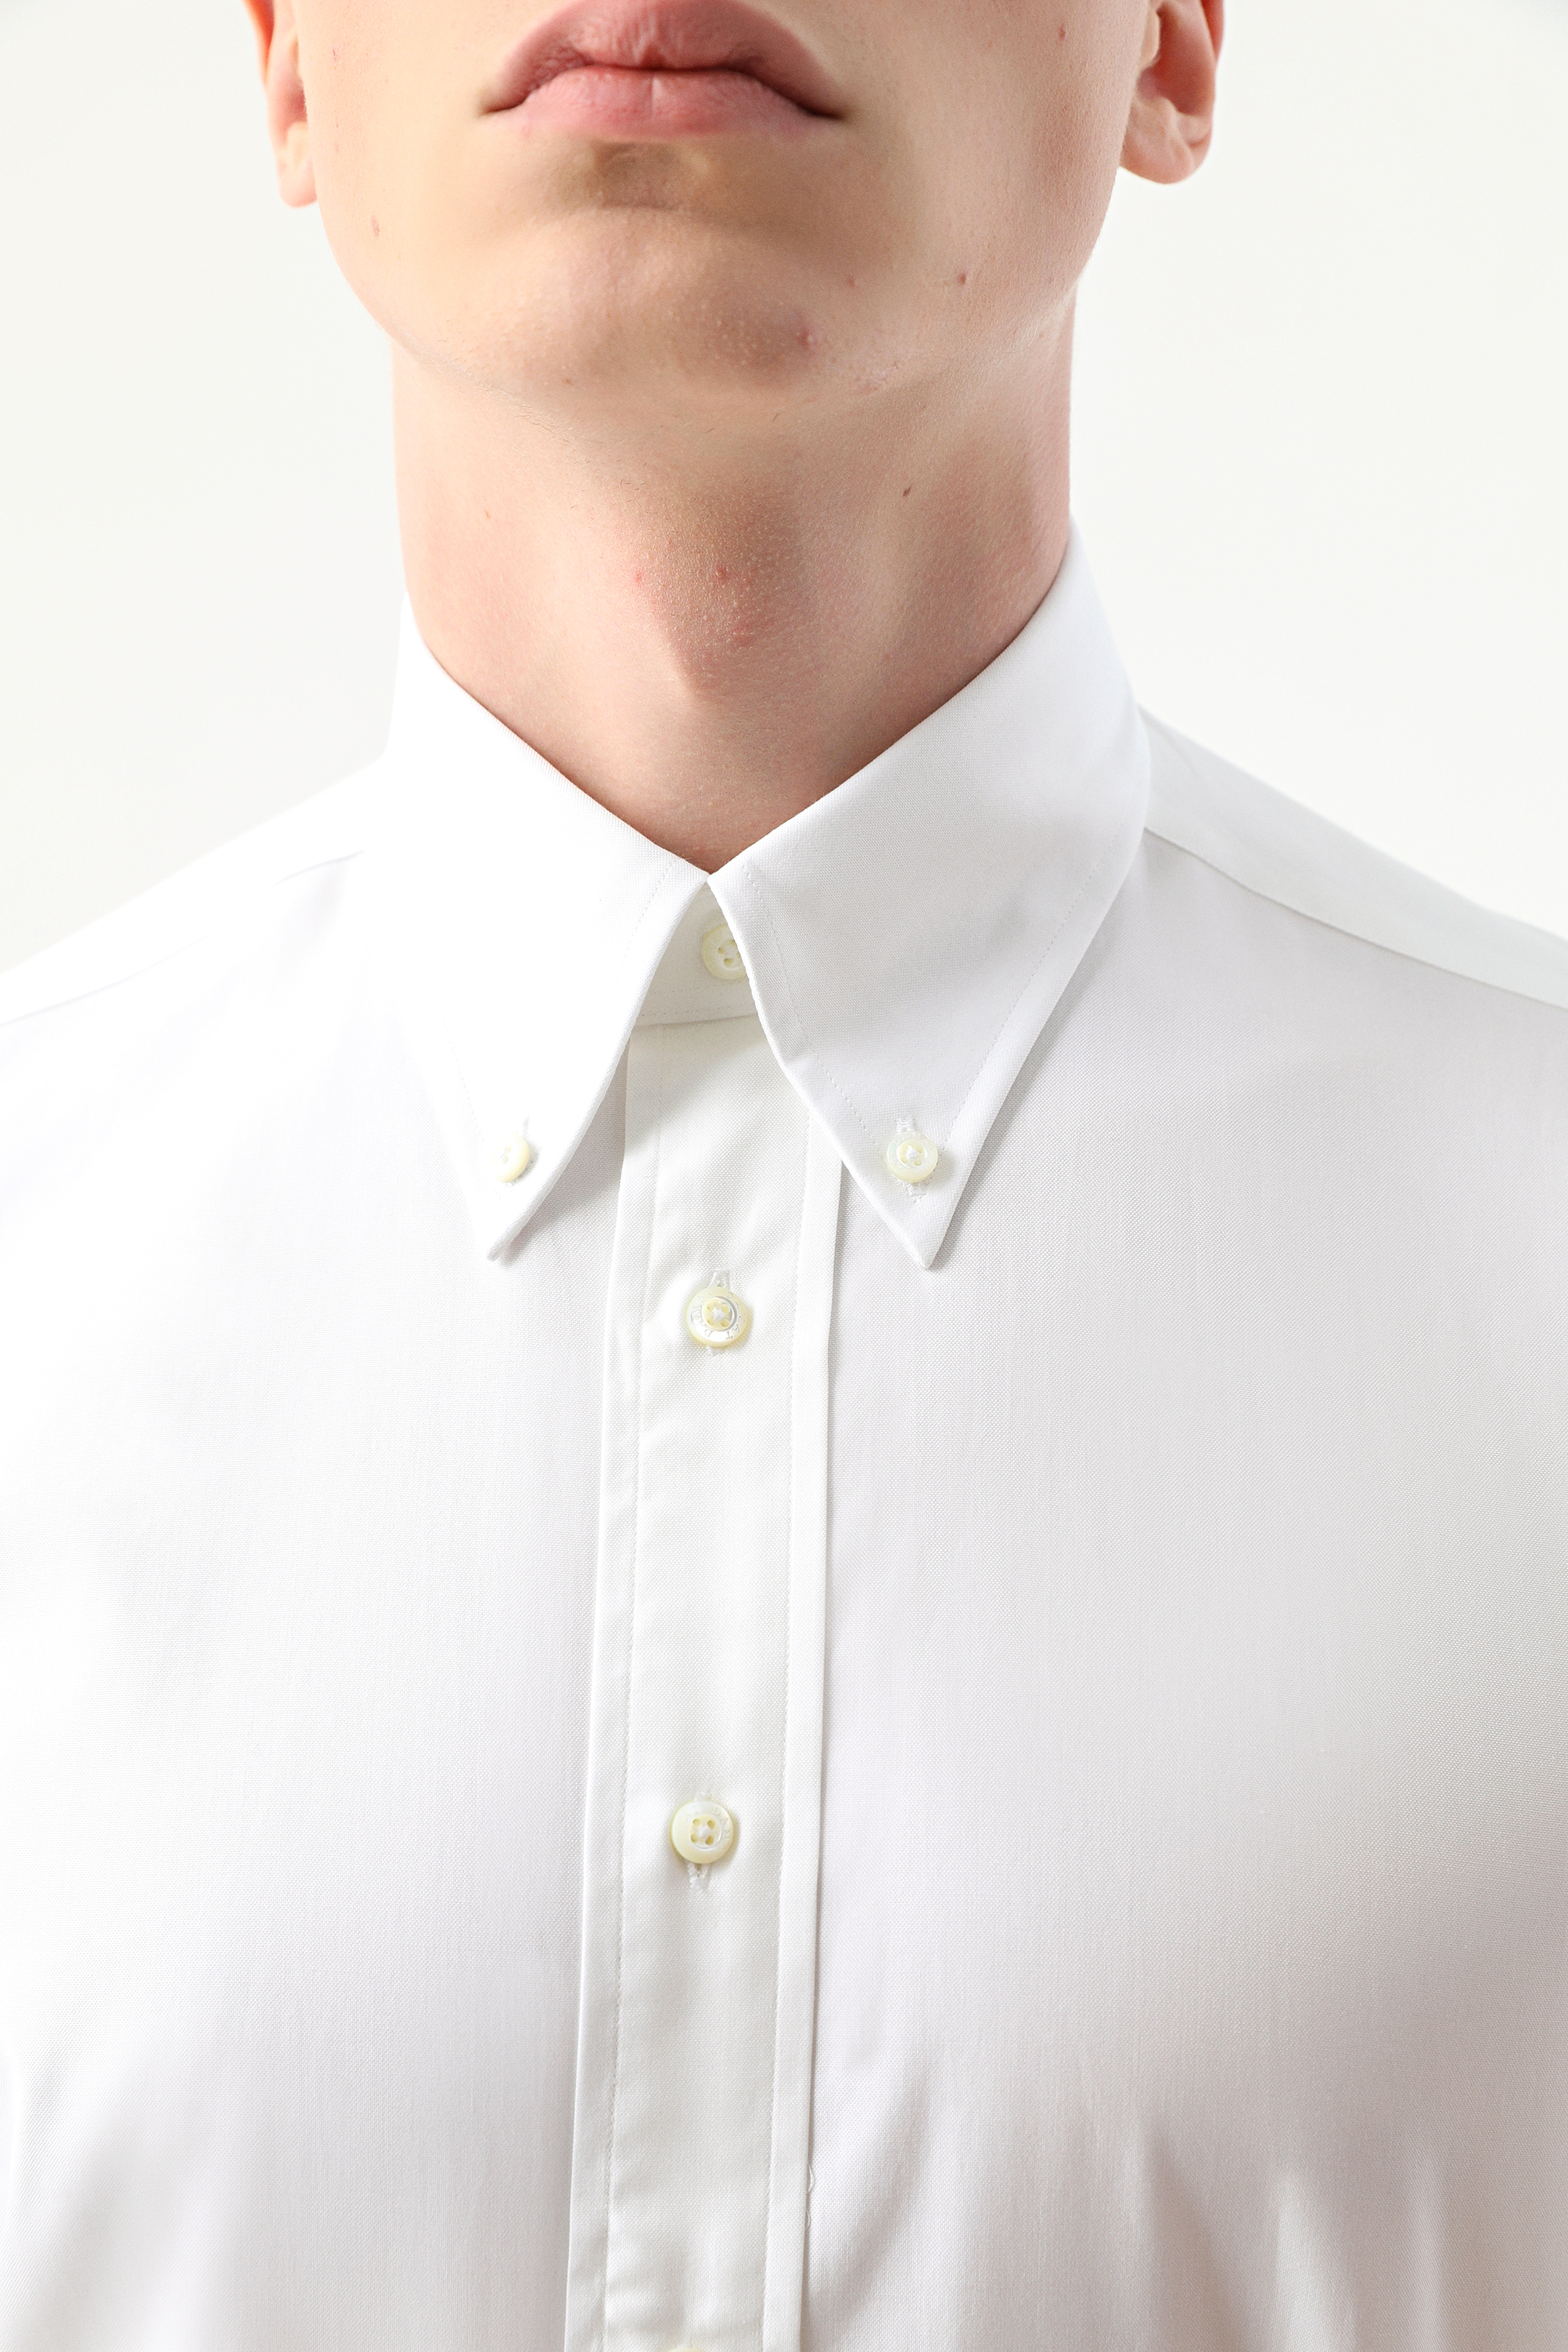 Damat Tween Damat Comfort Beyaz Düz Nano Care Gömlek. 3